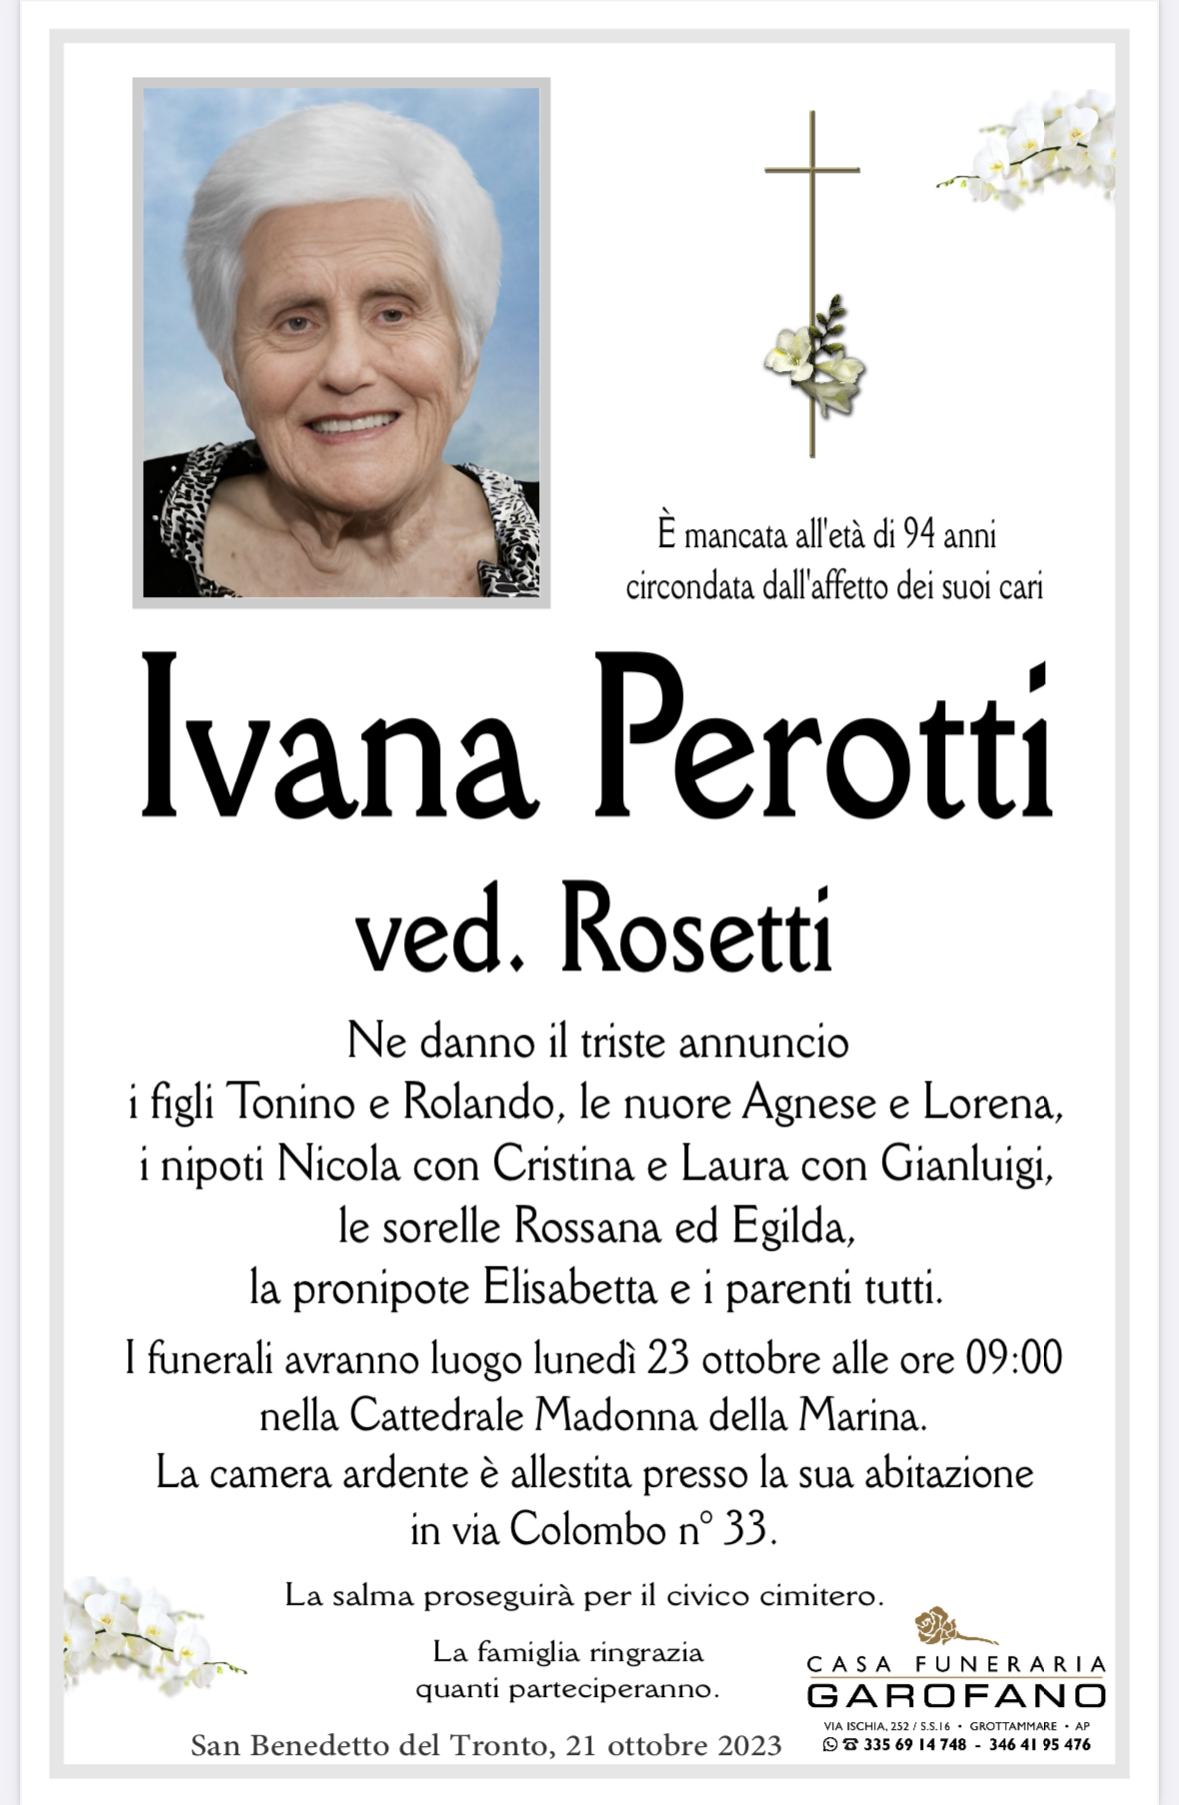 Ivana Perotti